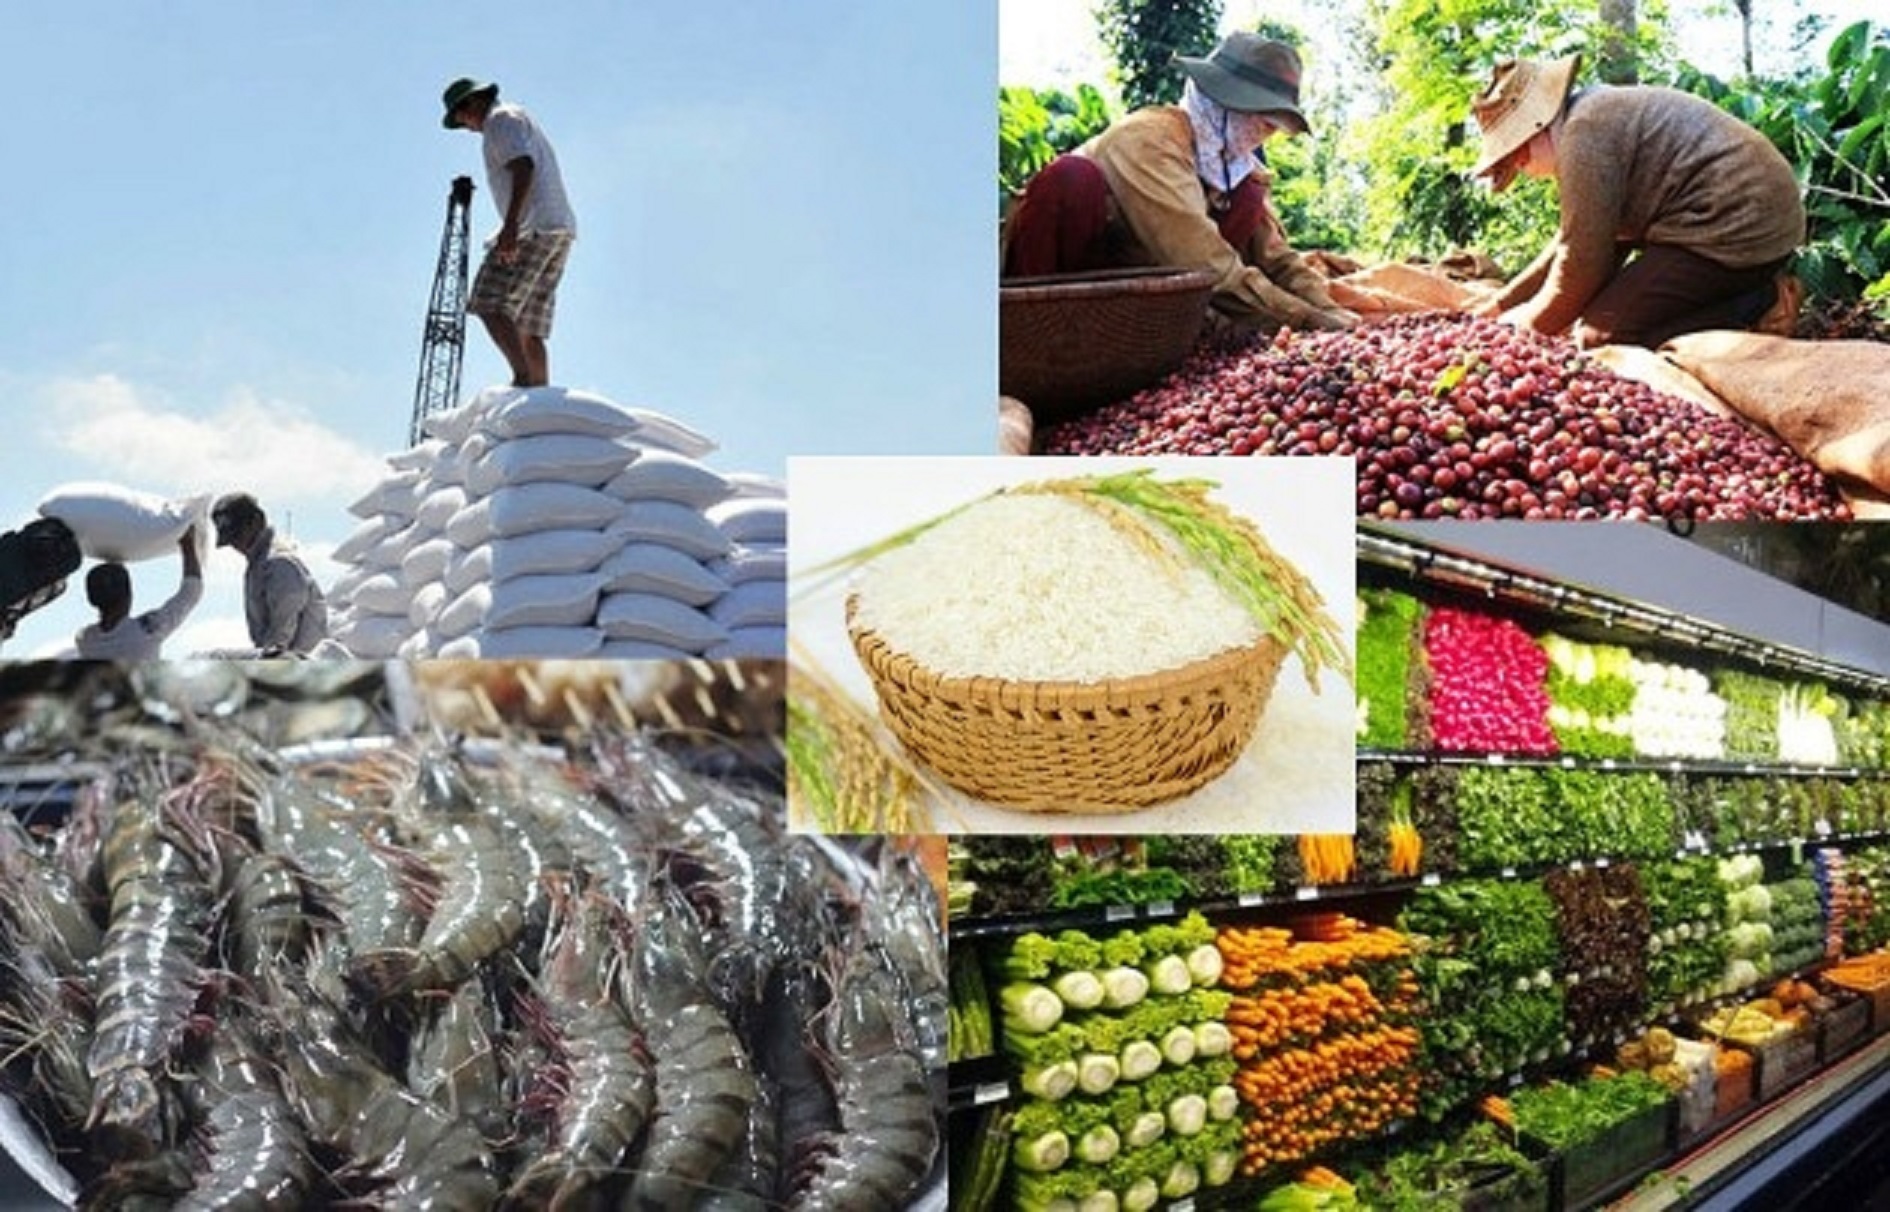 Đa dạng các sản phẩm nông sản như gạo, hải sản, trái cây được xuất khẩu và phân phối tại Nhật ...